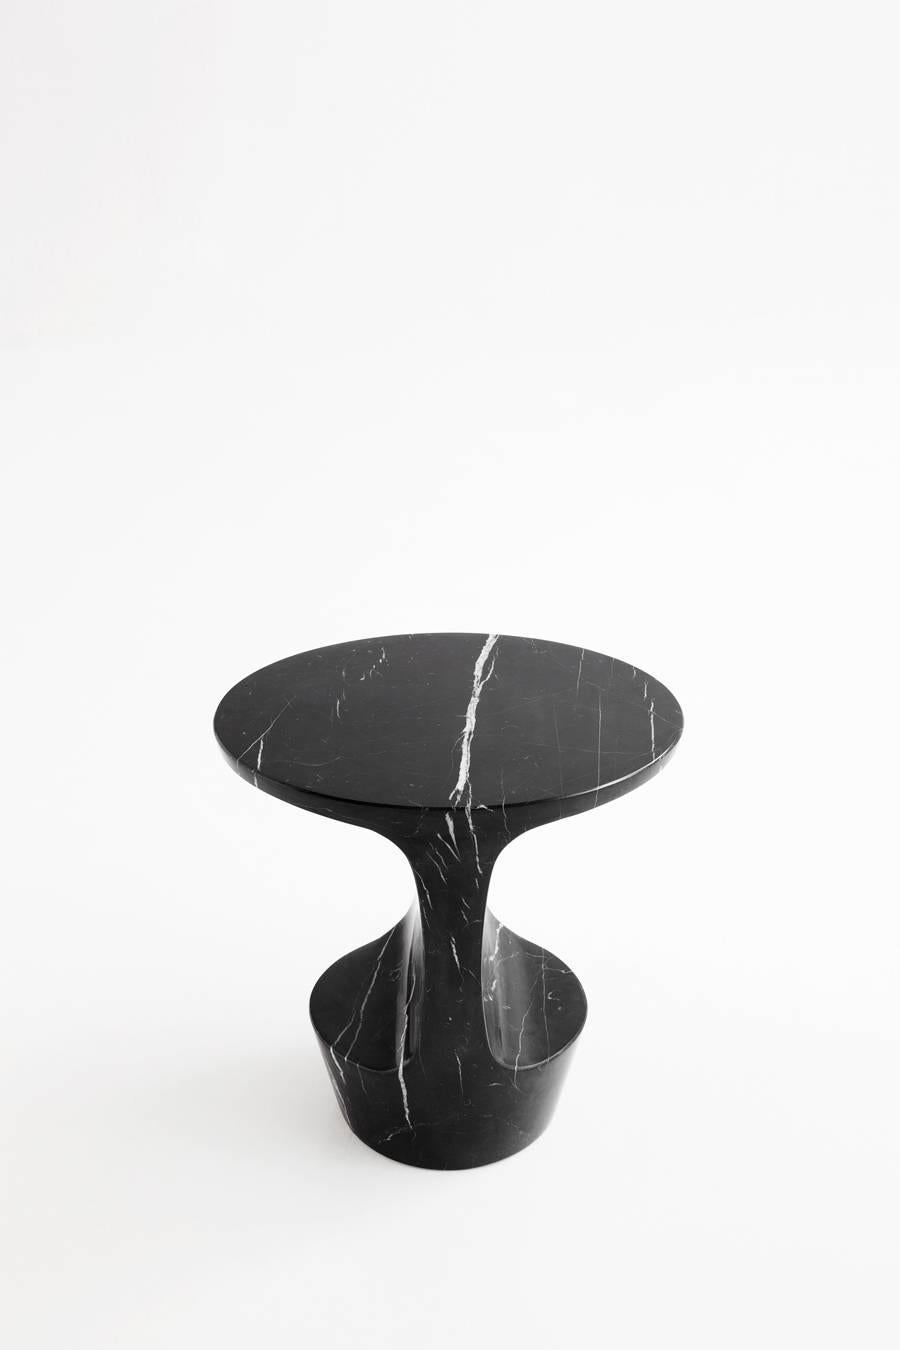 Adolfo Abejon 'Atlas' Carrara White Marble Side Table 1